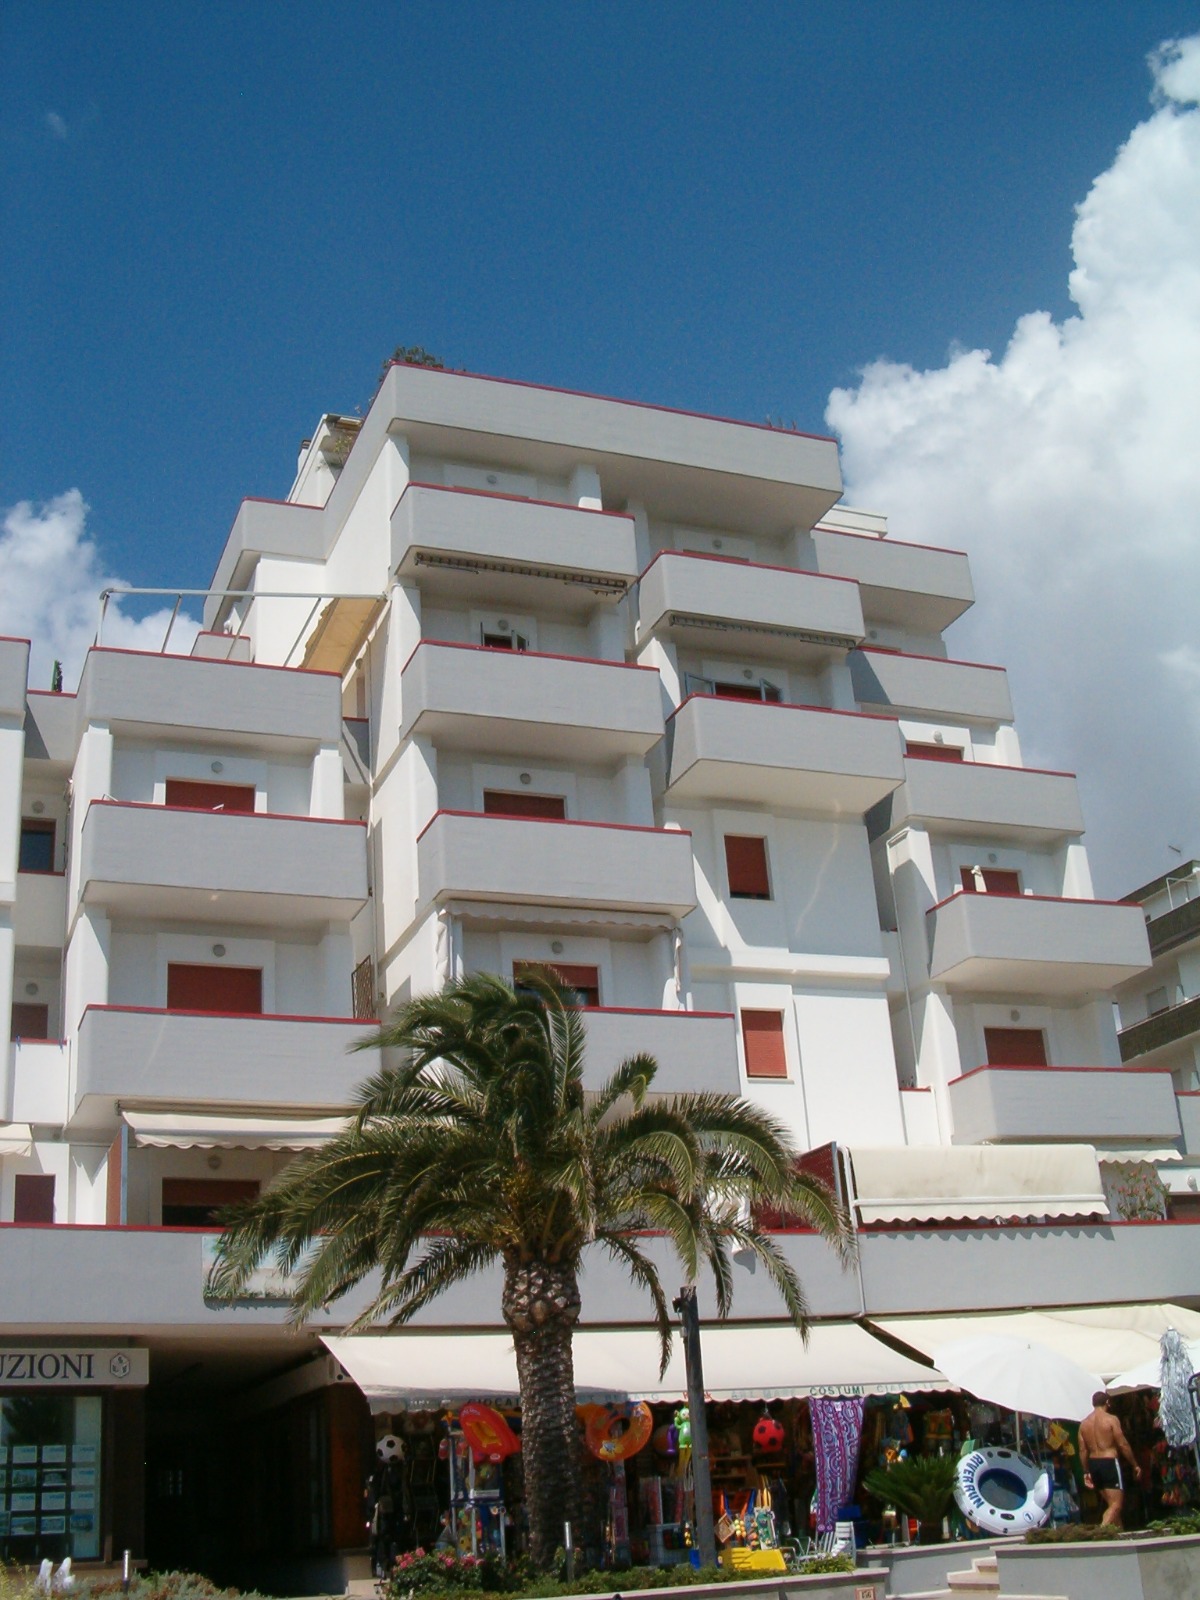 Appartamento in affitto - Il Palmizio - Alba Adriatica